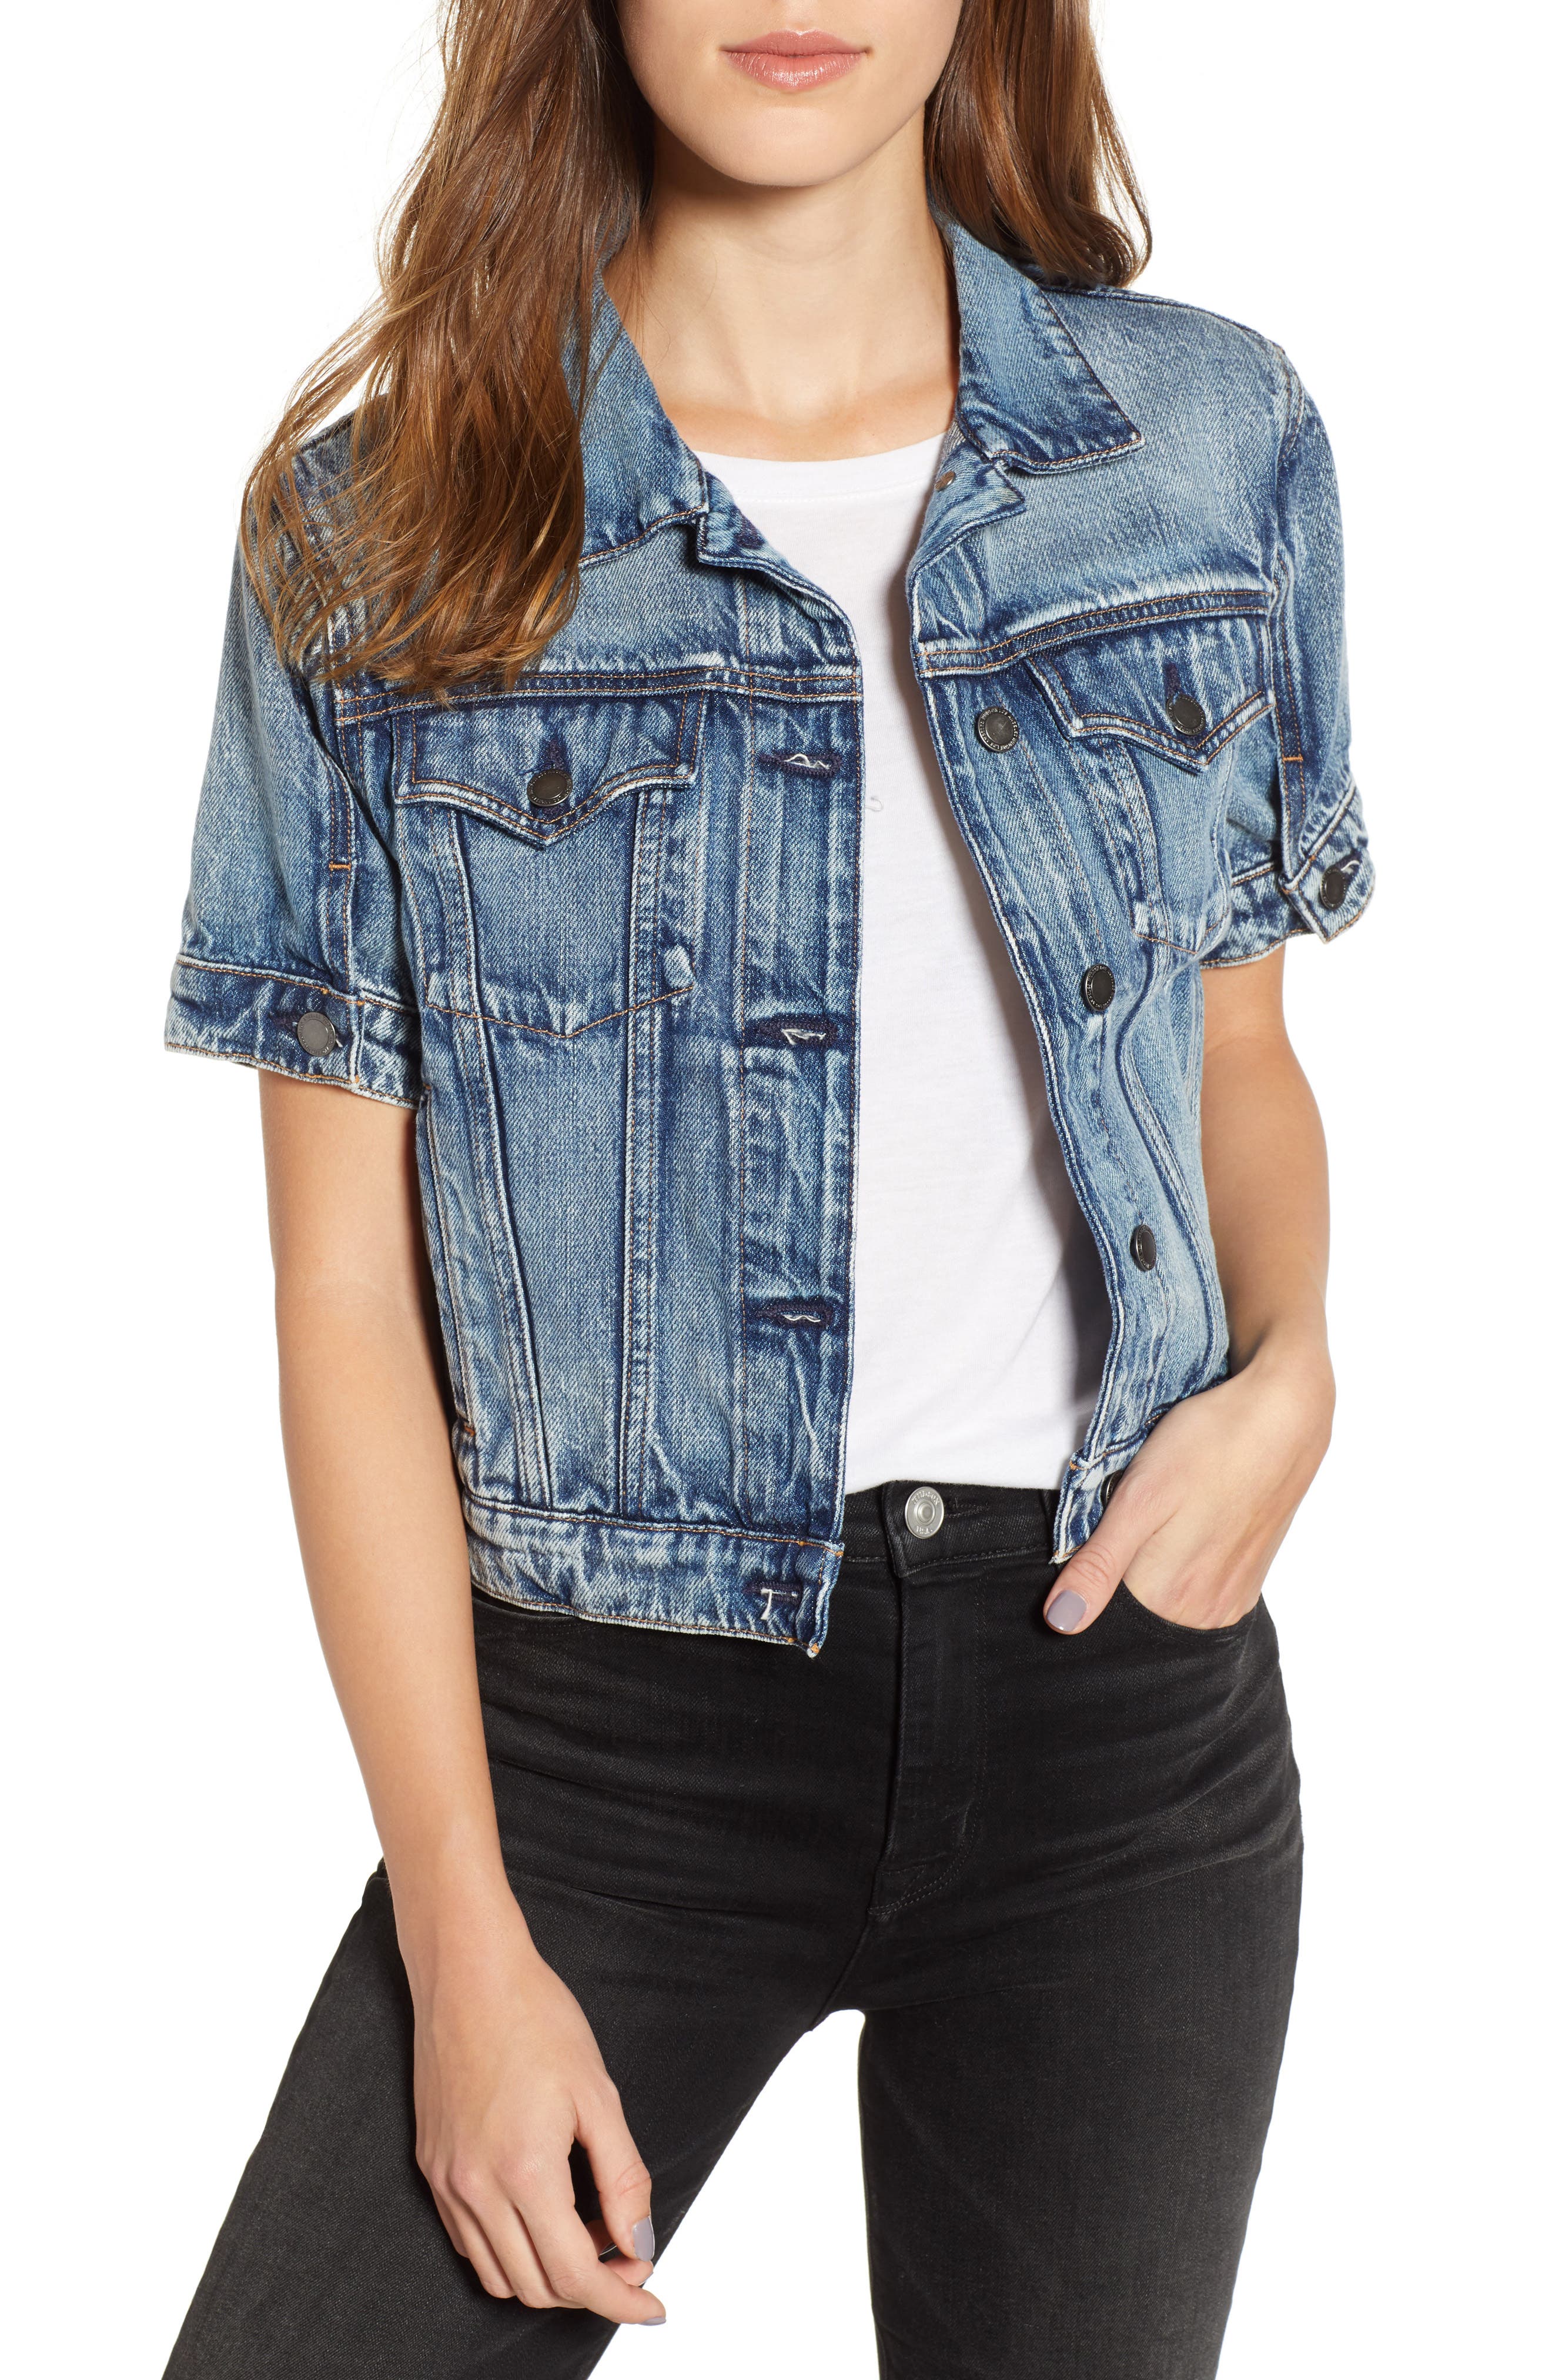 women's short sleeve blue jean jacket